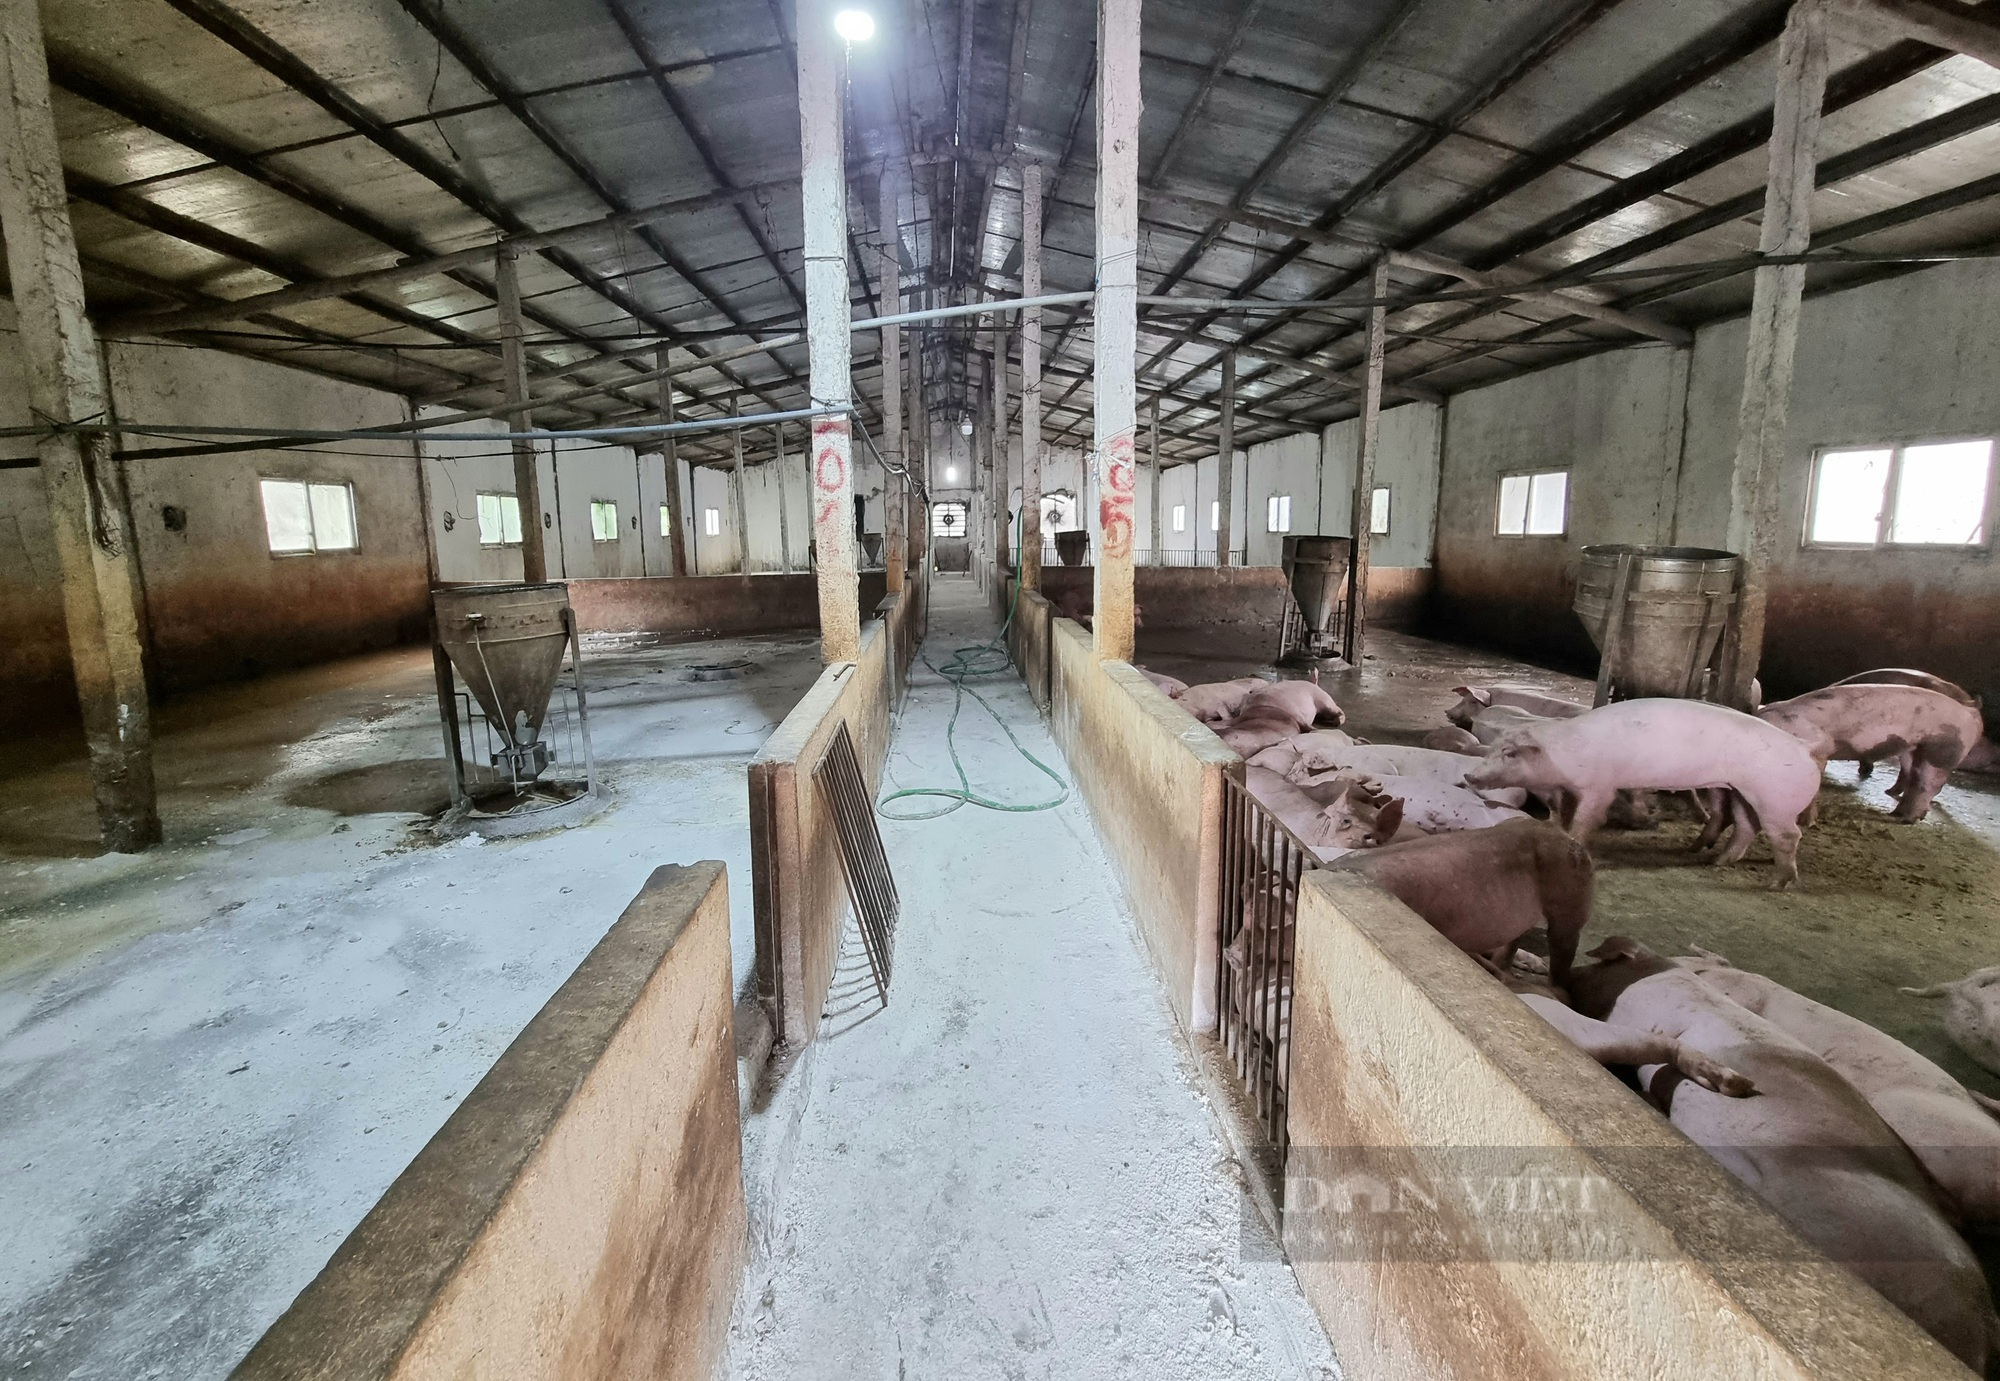 Gần nửa tháng nông dân Yên Mô phản đối trại lợn gây hôi thối - Ảnh 3.